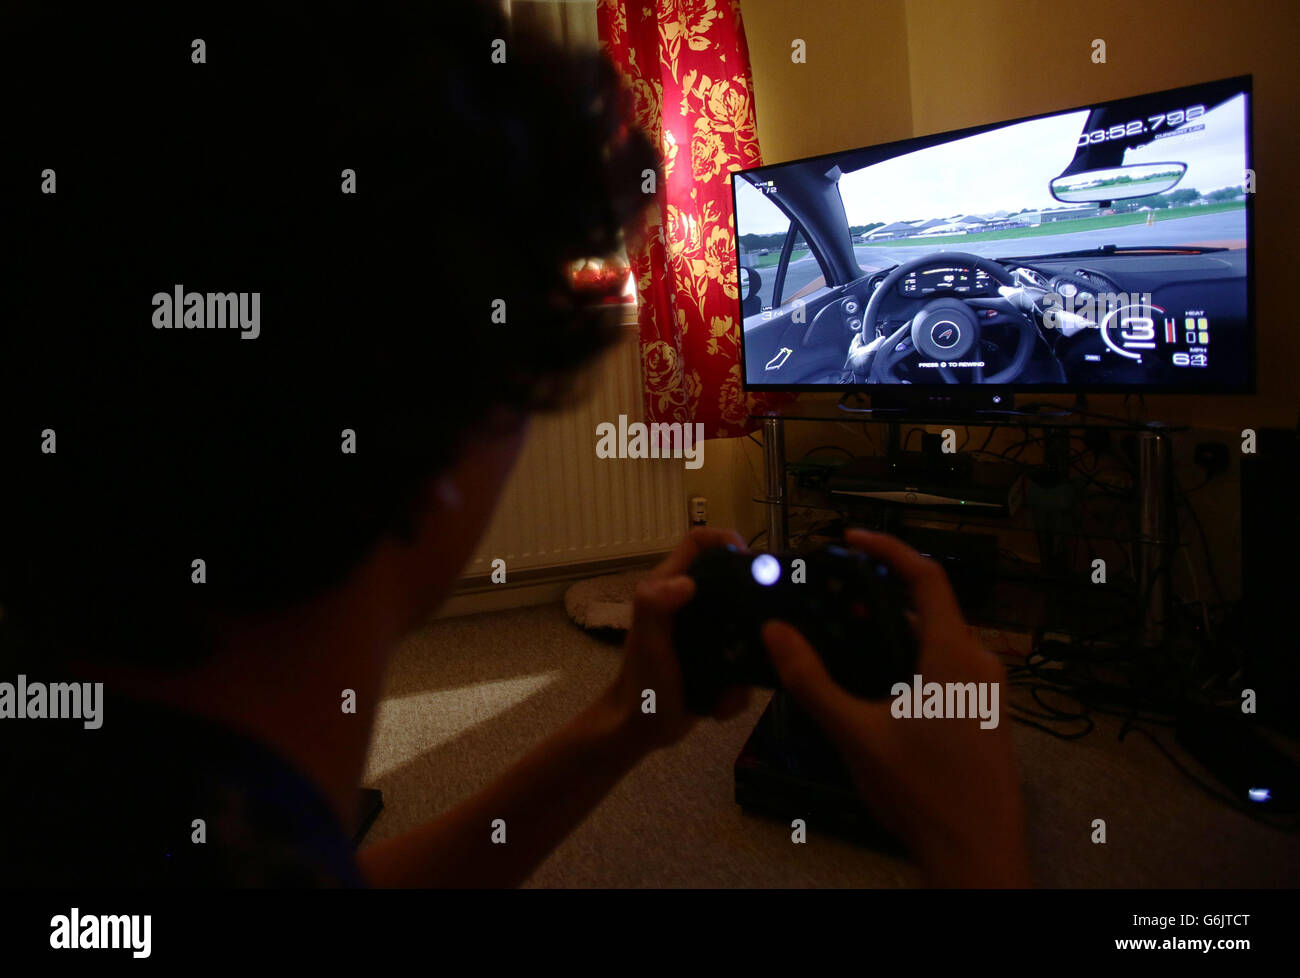 Ein Teenager hält einen Controller, um das Videospiel Forza Motorsport 5  auf einer Microsoft Xbox One Konsole zu spielen, in Corfe Mullen, Dorset  Stockfotografie - Alamy